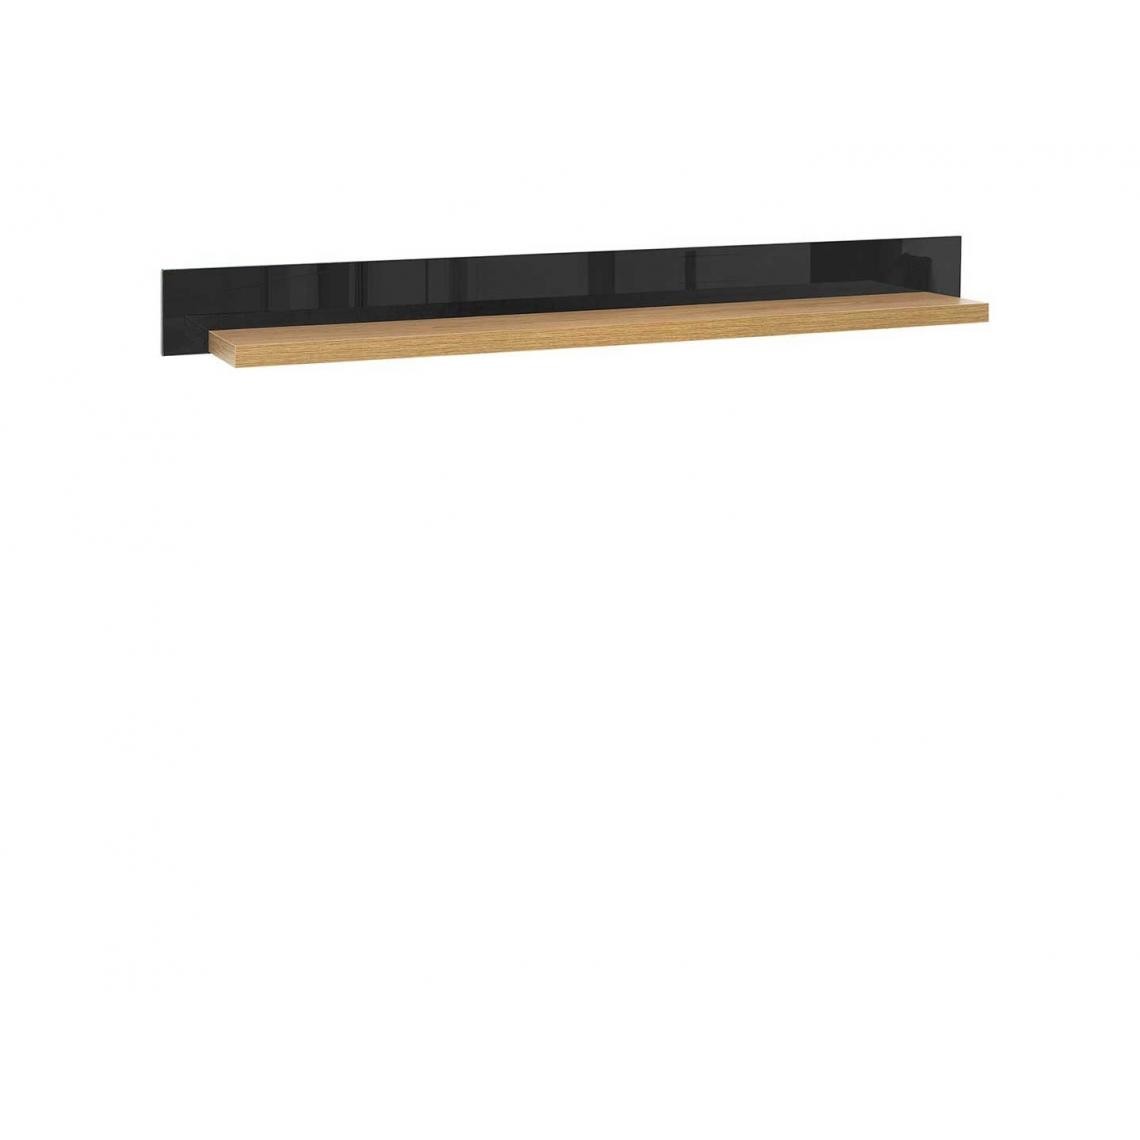 Hucoco - ARISSIO - Tablette suspendue style moderne salon/chambre à cocher/chambre d'ado - 150x25.5x14 - Spacieuse - Tablette murale - Chêne - Etagères